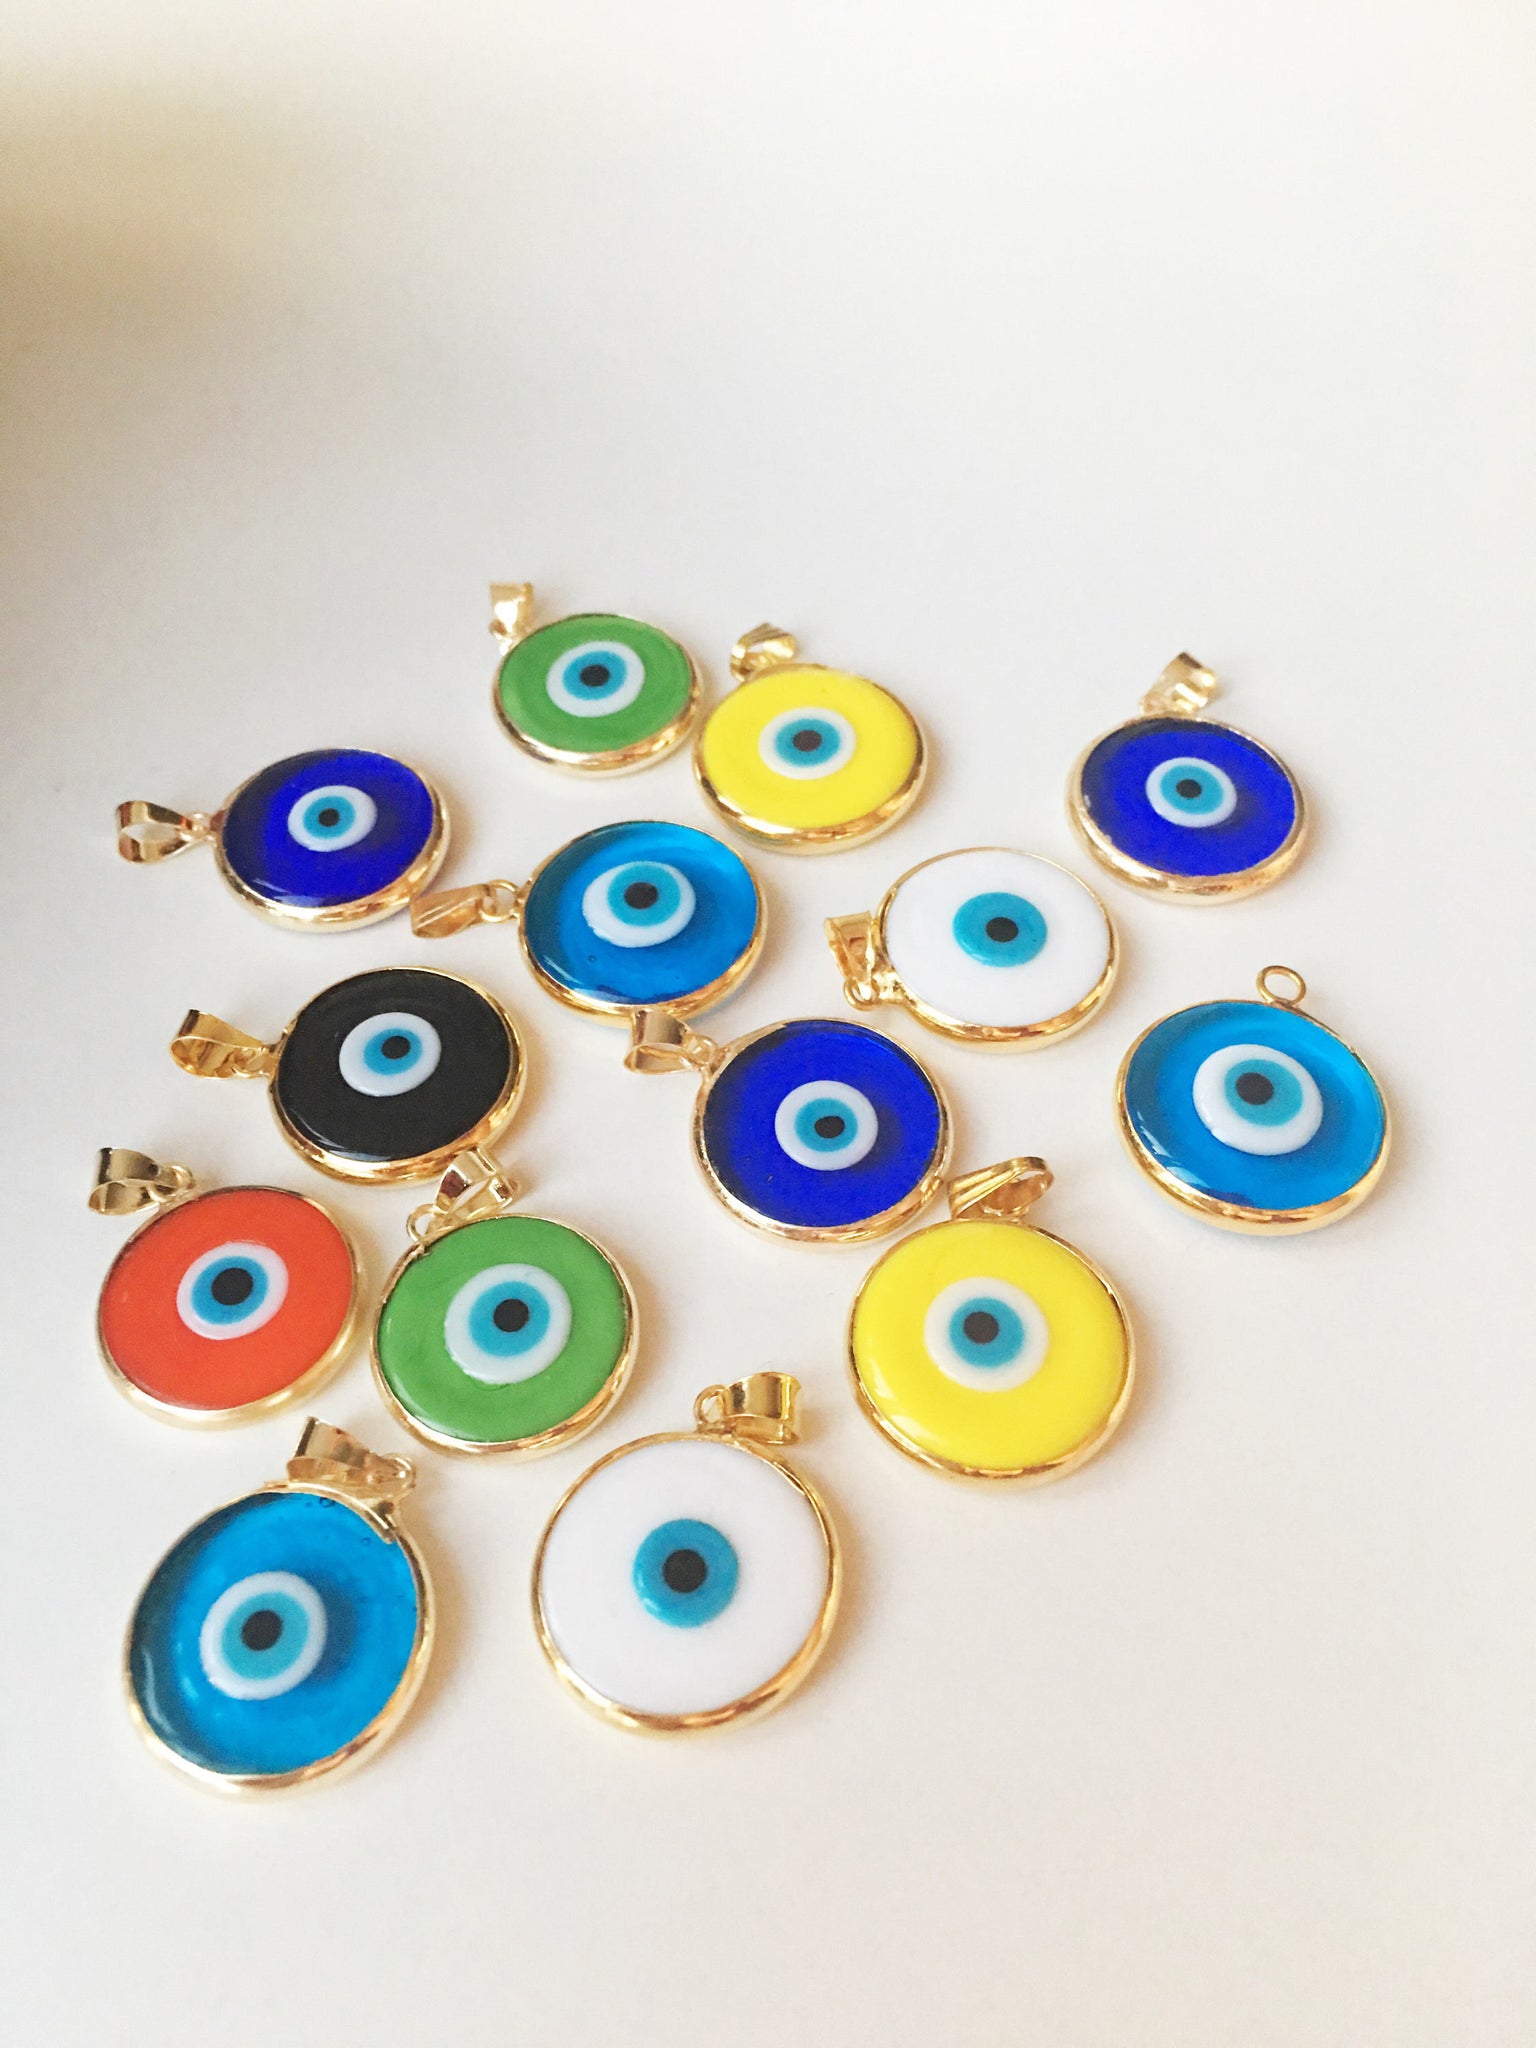 Evil eye beads 5 pcs, murano glass beads, evil eye charm for